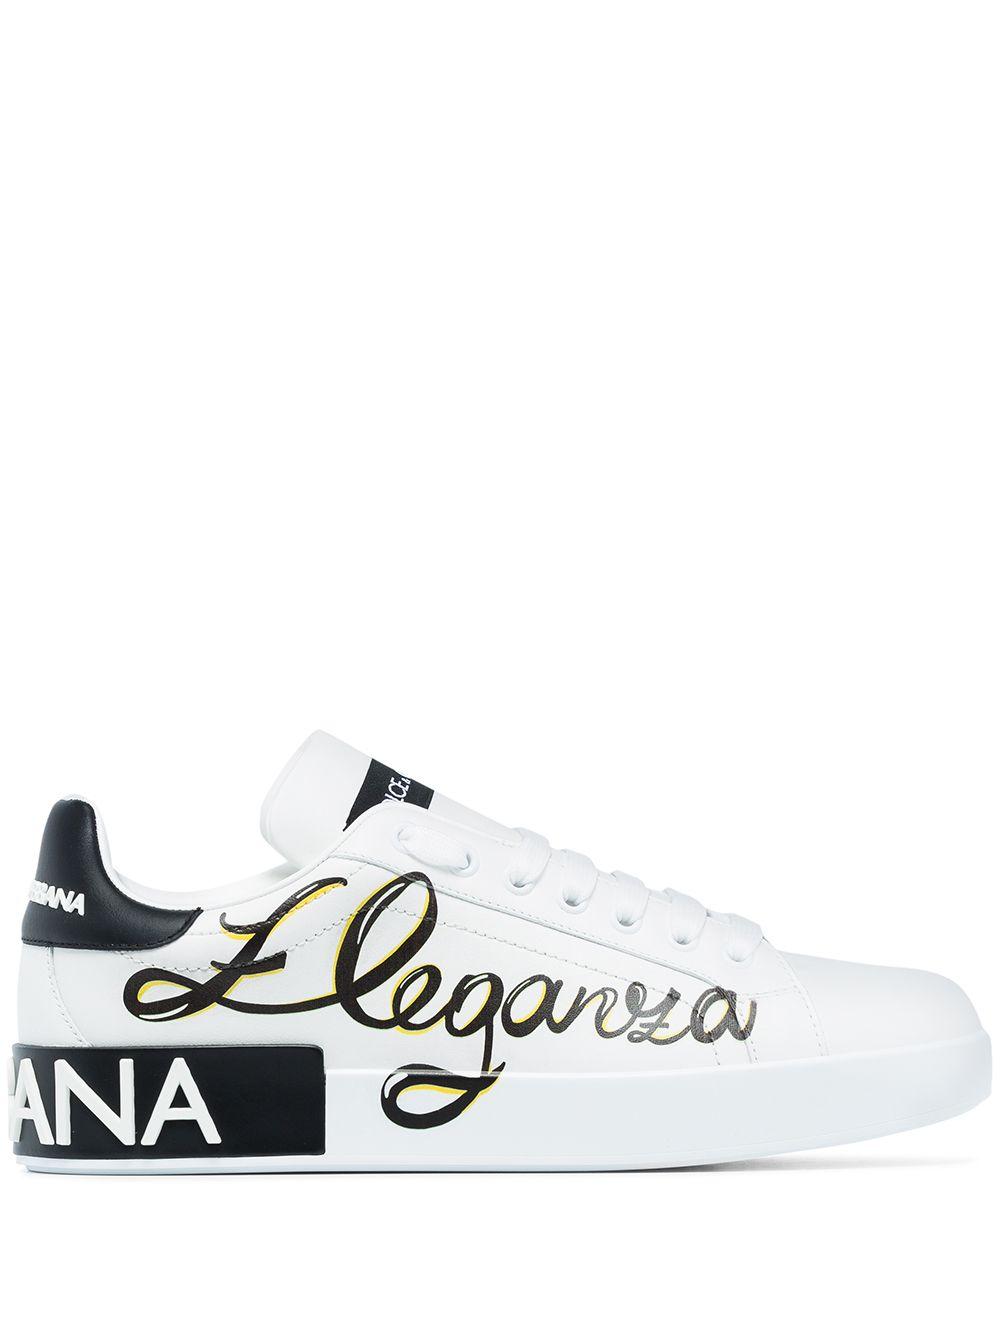 Dolce & Gabbana Rubber White Portofino Eleganza Sneakers | Lyst